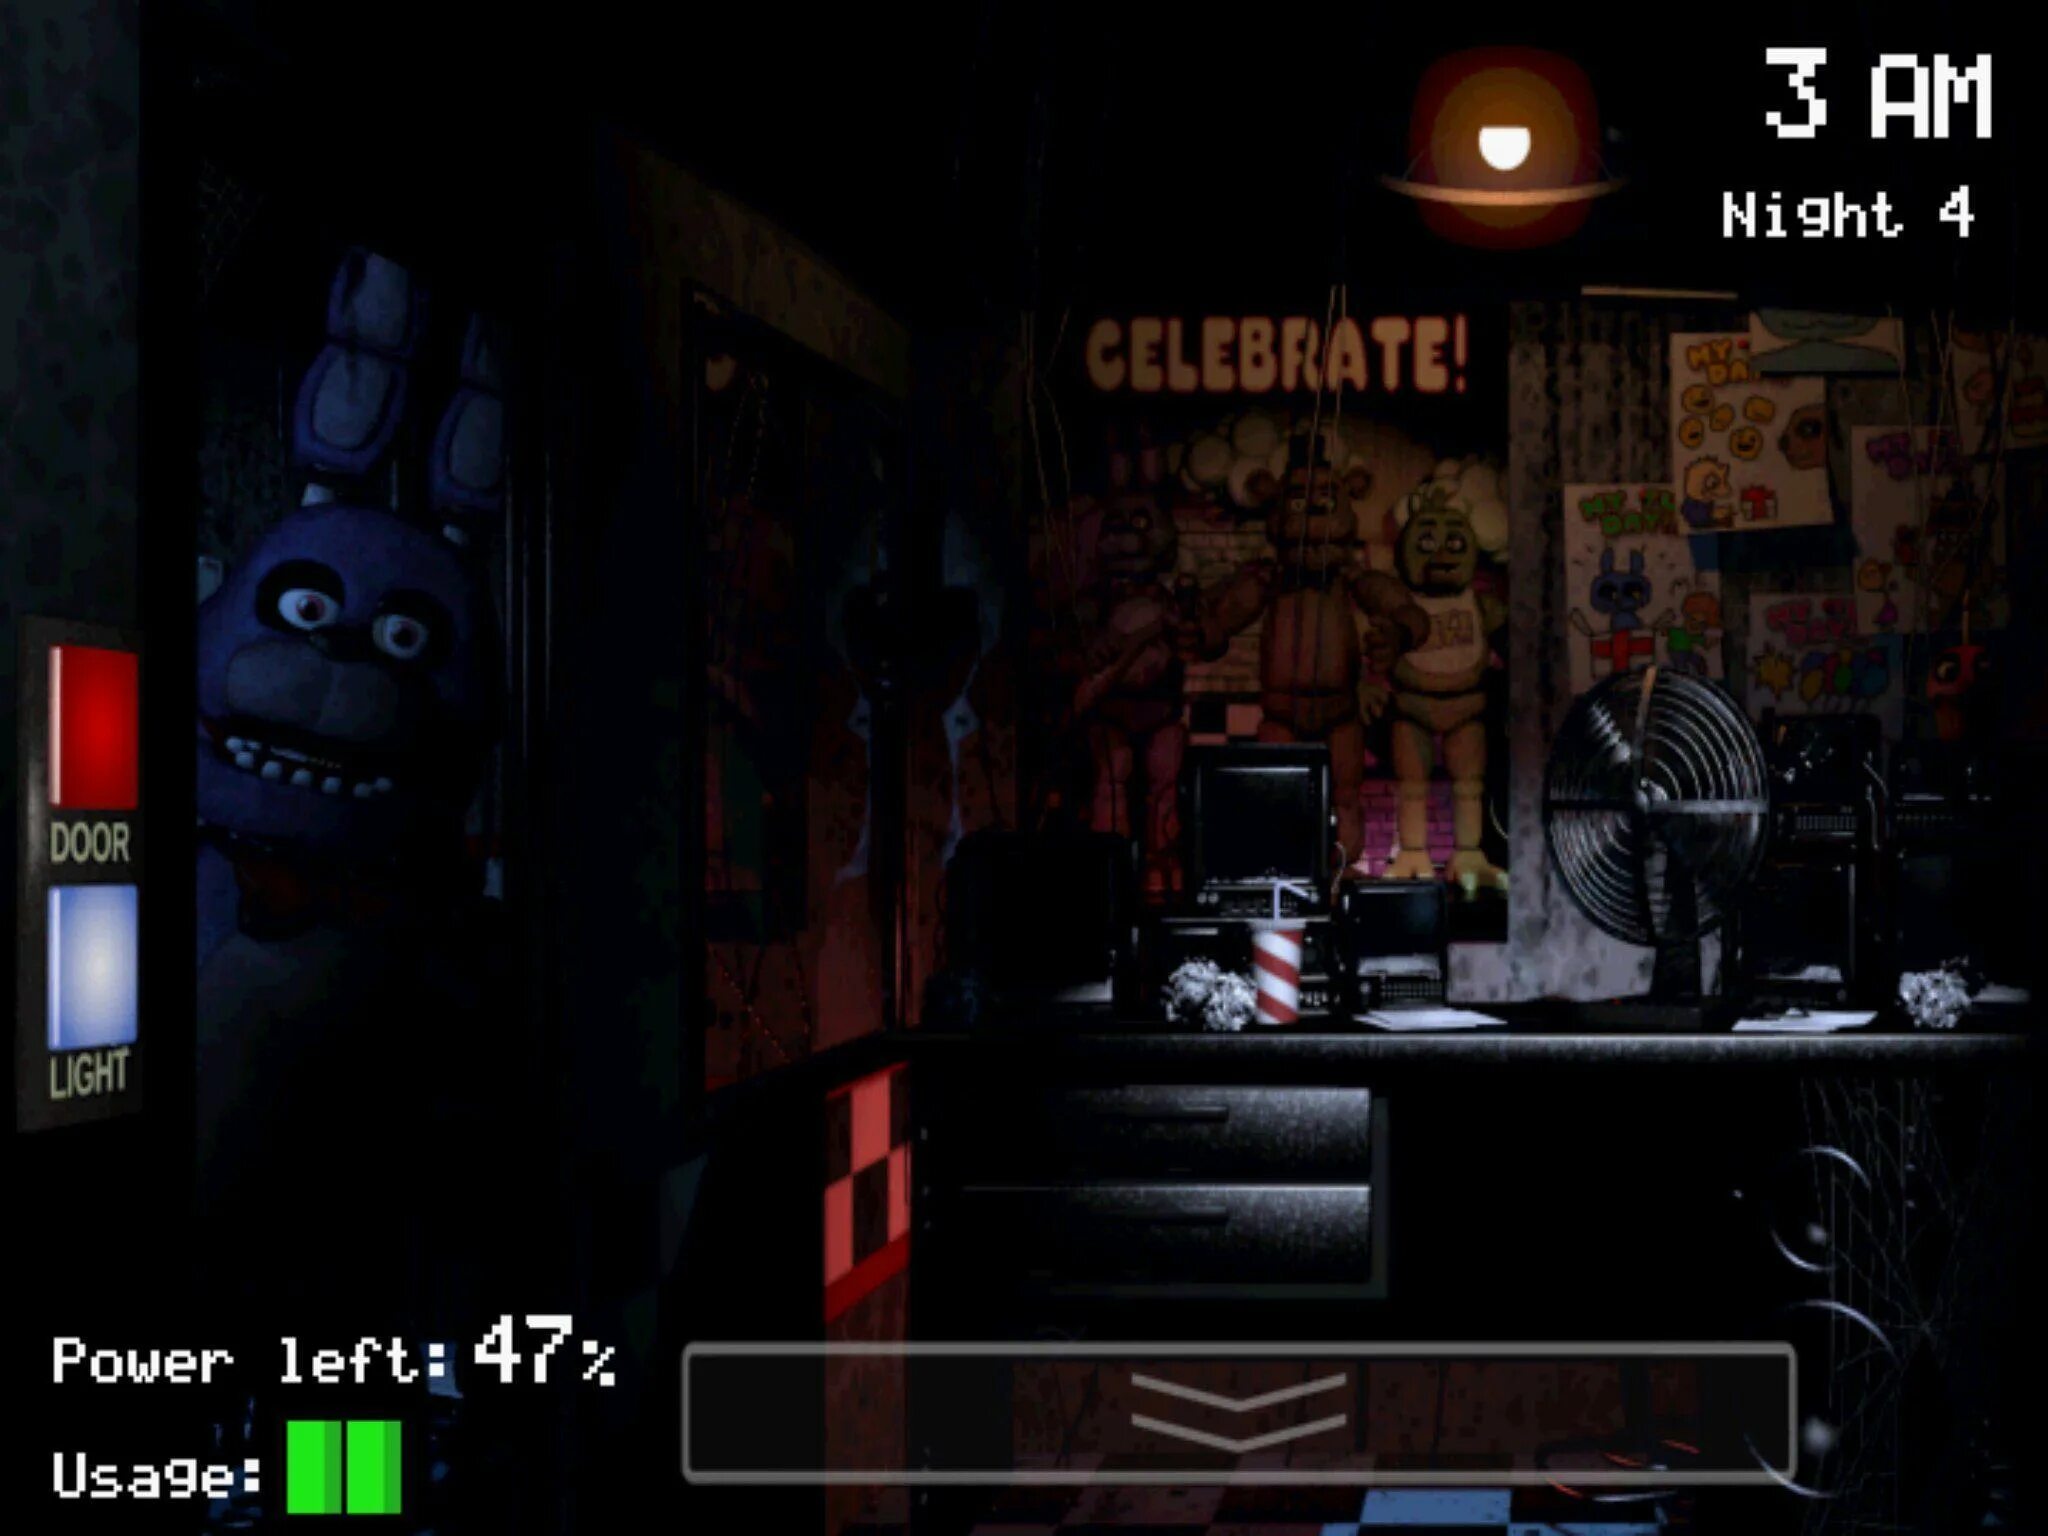 Five Nights at Freddy's 1 Скриншоты. Фредди из игры ФНАФ 1. 5 Ночей с Фредди Скриншоты. ФНАФ 1 скрины игры.